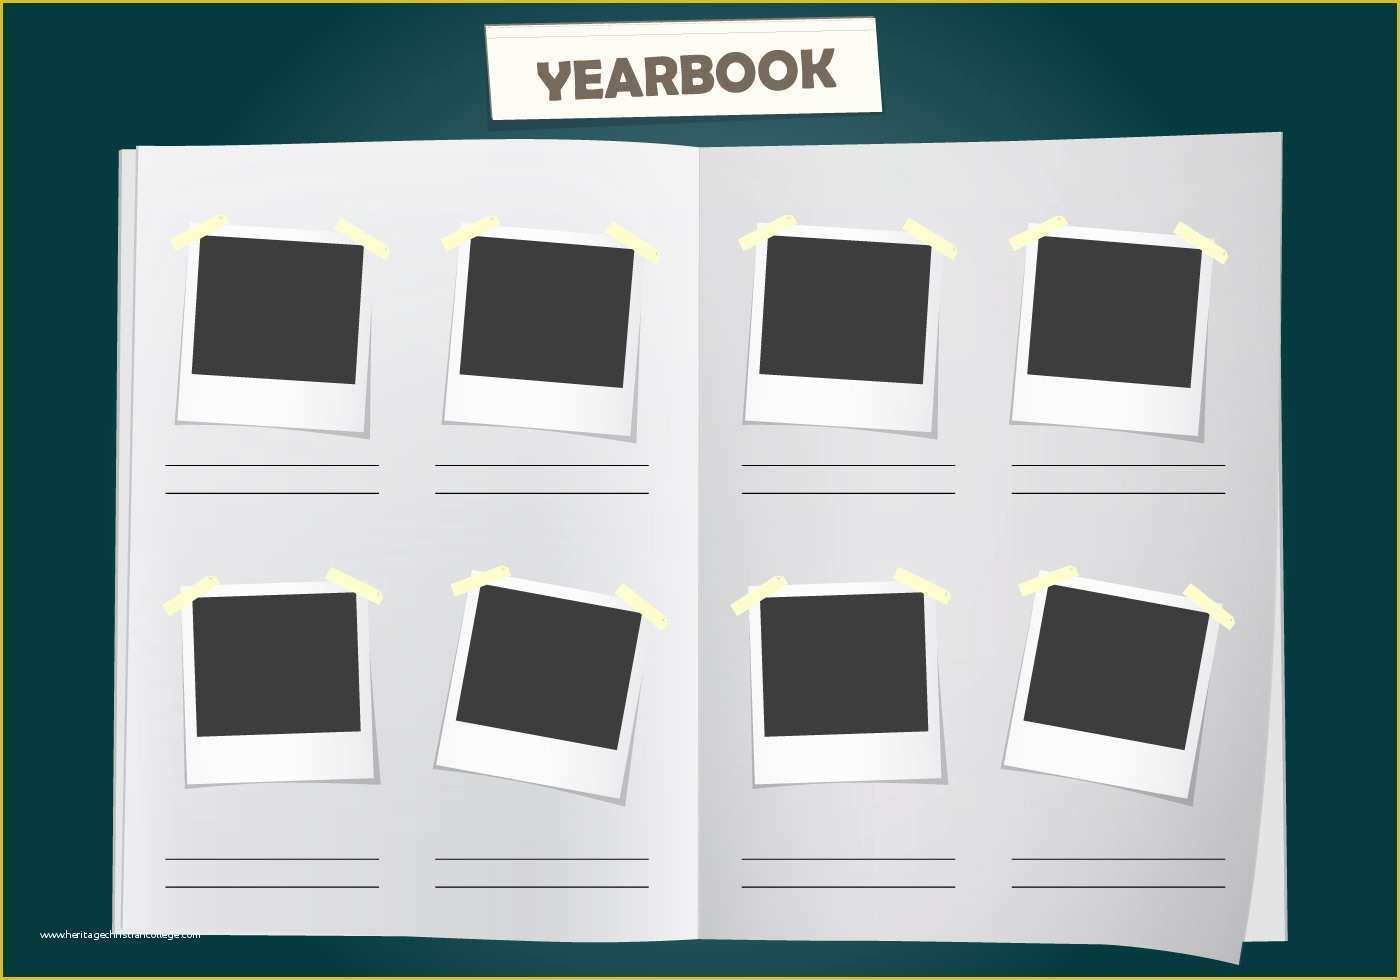 Free Yearbook Templates Of Album Yearbook Vector Template Download Free Vector Art